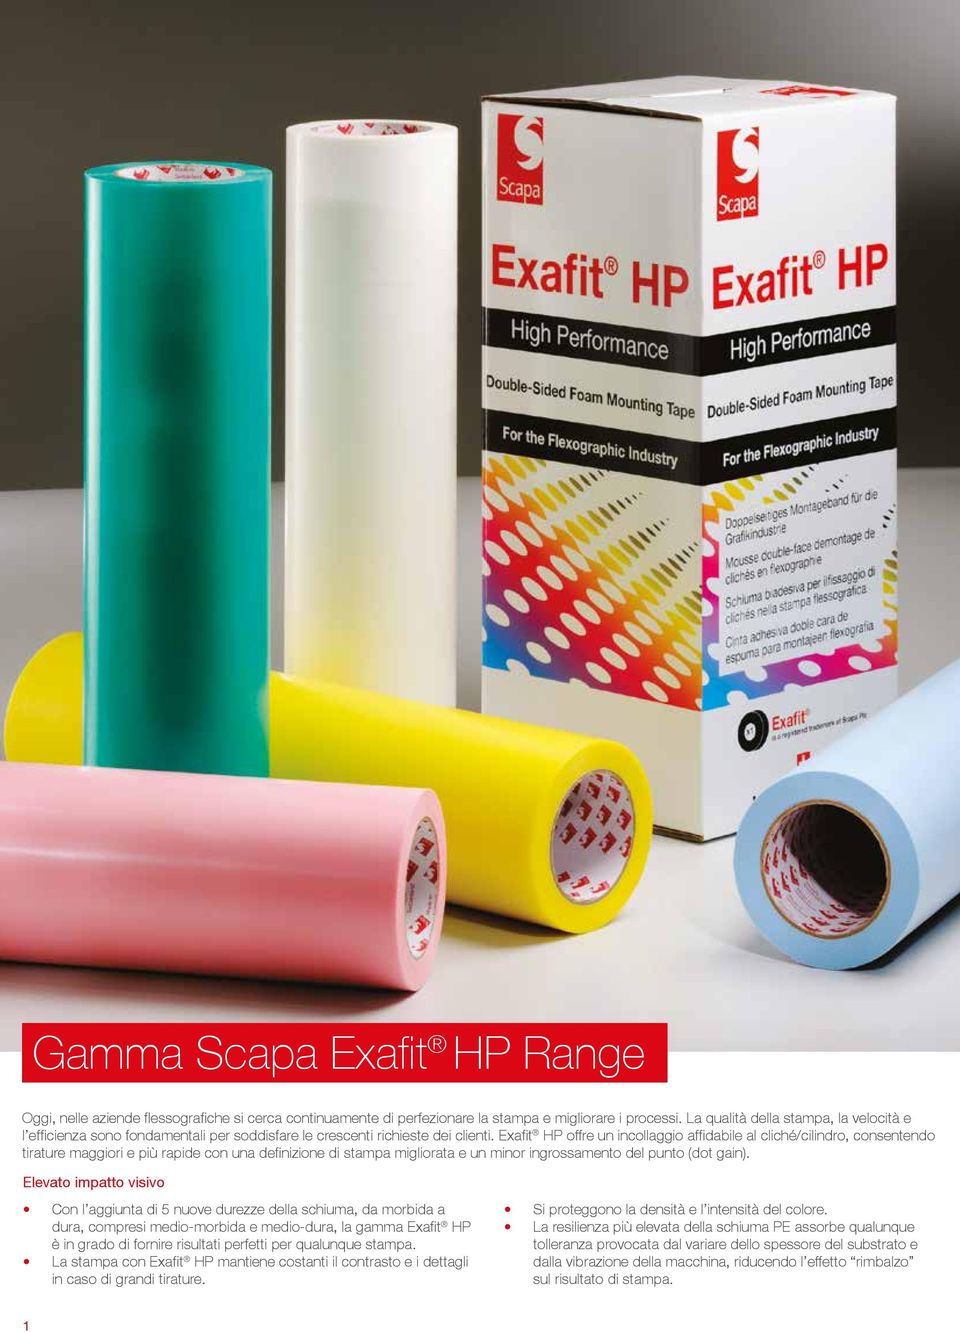 Exafit HP offre un incollaggio affidabile al cliché/cilindro, consentendo tirature maggiori e più rapide con una definizione di stampa migliorata e un minor ingrossamento del punto (dot gain).